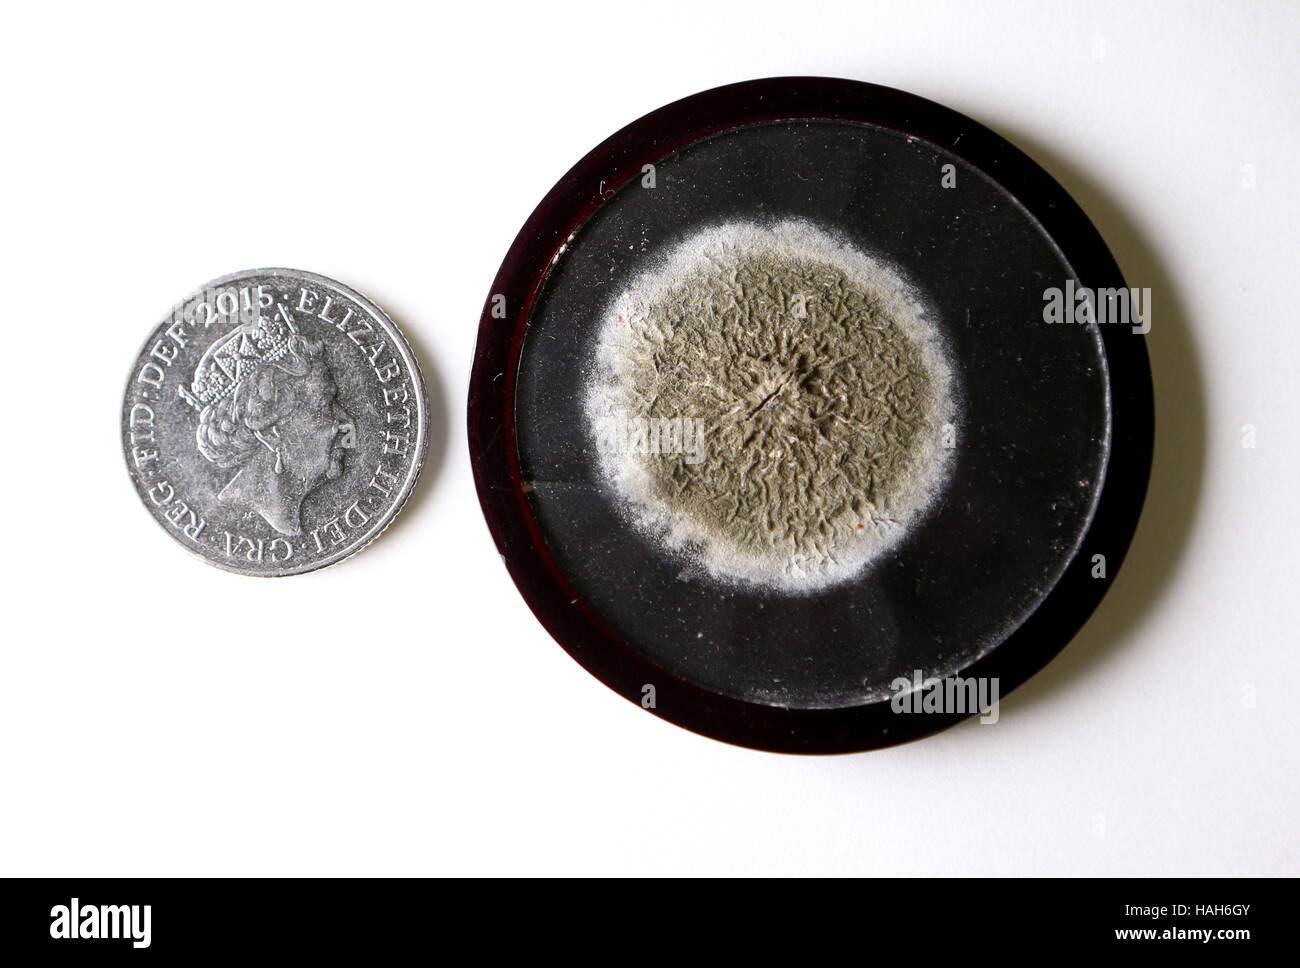 Eine Petrischale, die hält eine Probe von Schimmelpilzen, die Alexander Fleming, die Antibiotika macht von Penicillin zu entdecken, die eines der Elemente ist aktiviert, dass die Funktionen in "Verzeichnis der Sammlungen", ein neu veröffentlicht Leitfaden zur historischen Sammlungen der Universität Edinburgh. Stockfoto